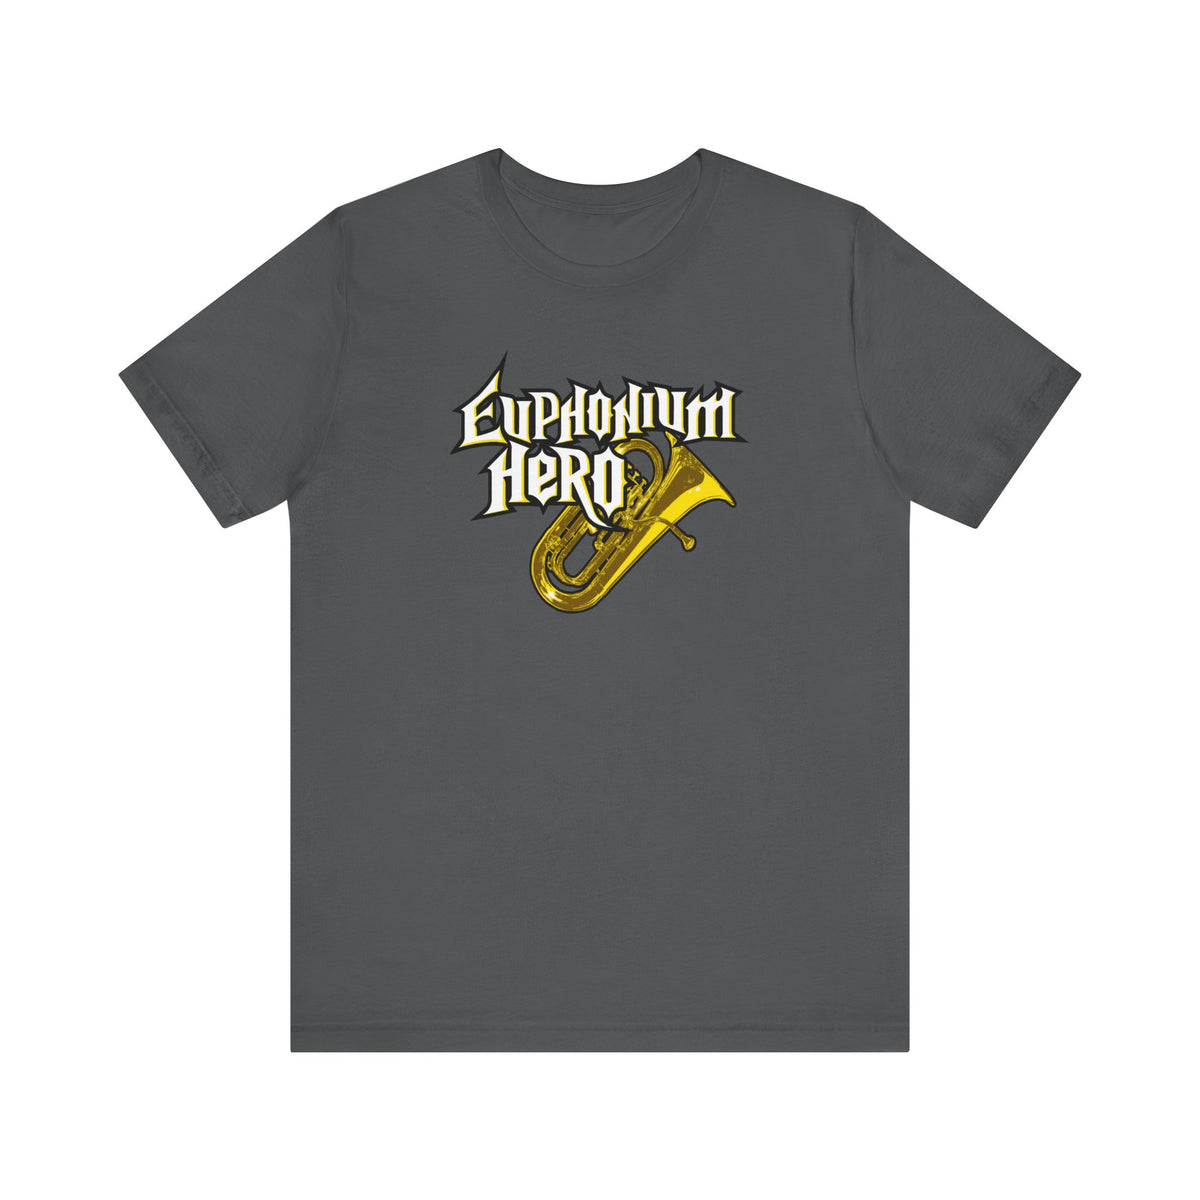 Euphonium Hero - Men's T-Shirt